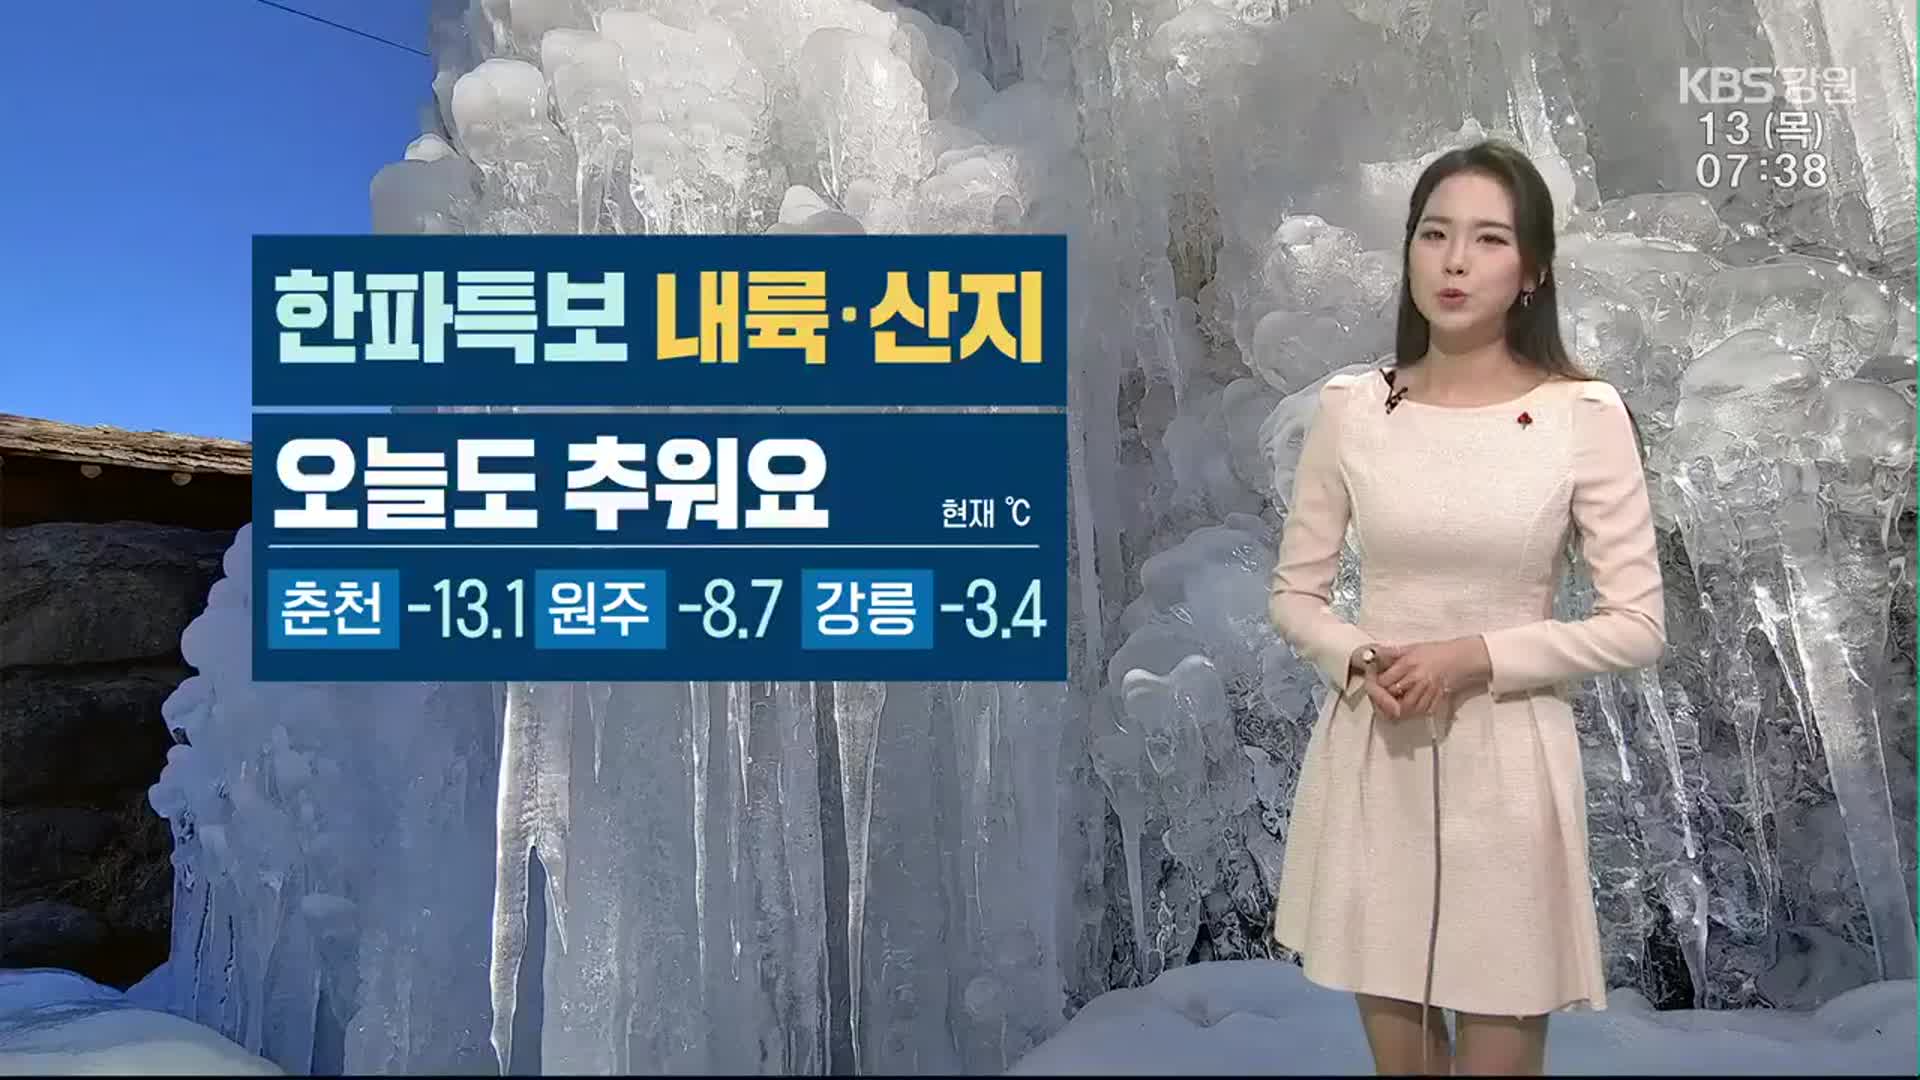 [날씨] 강원 내륙·산지 한파특보…춘천 영하 13도